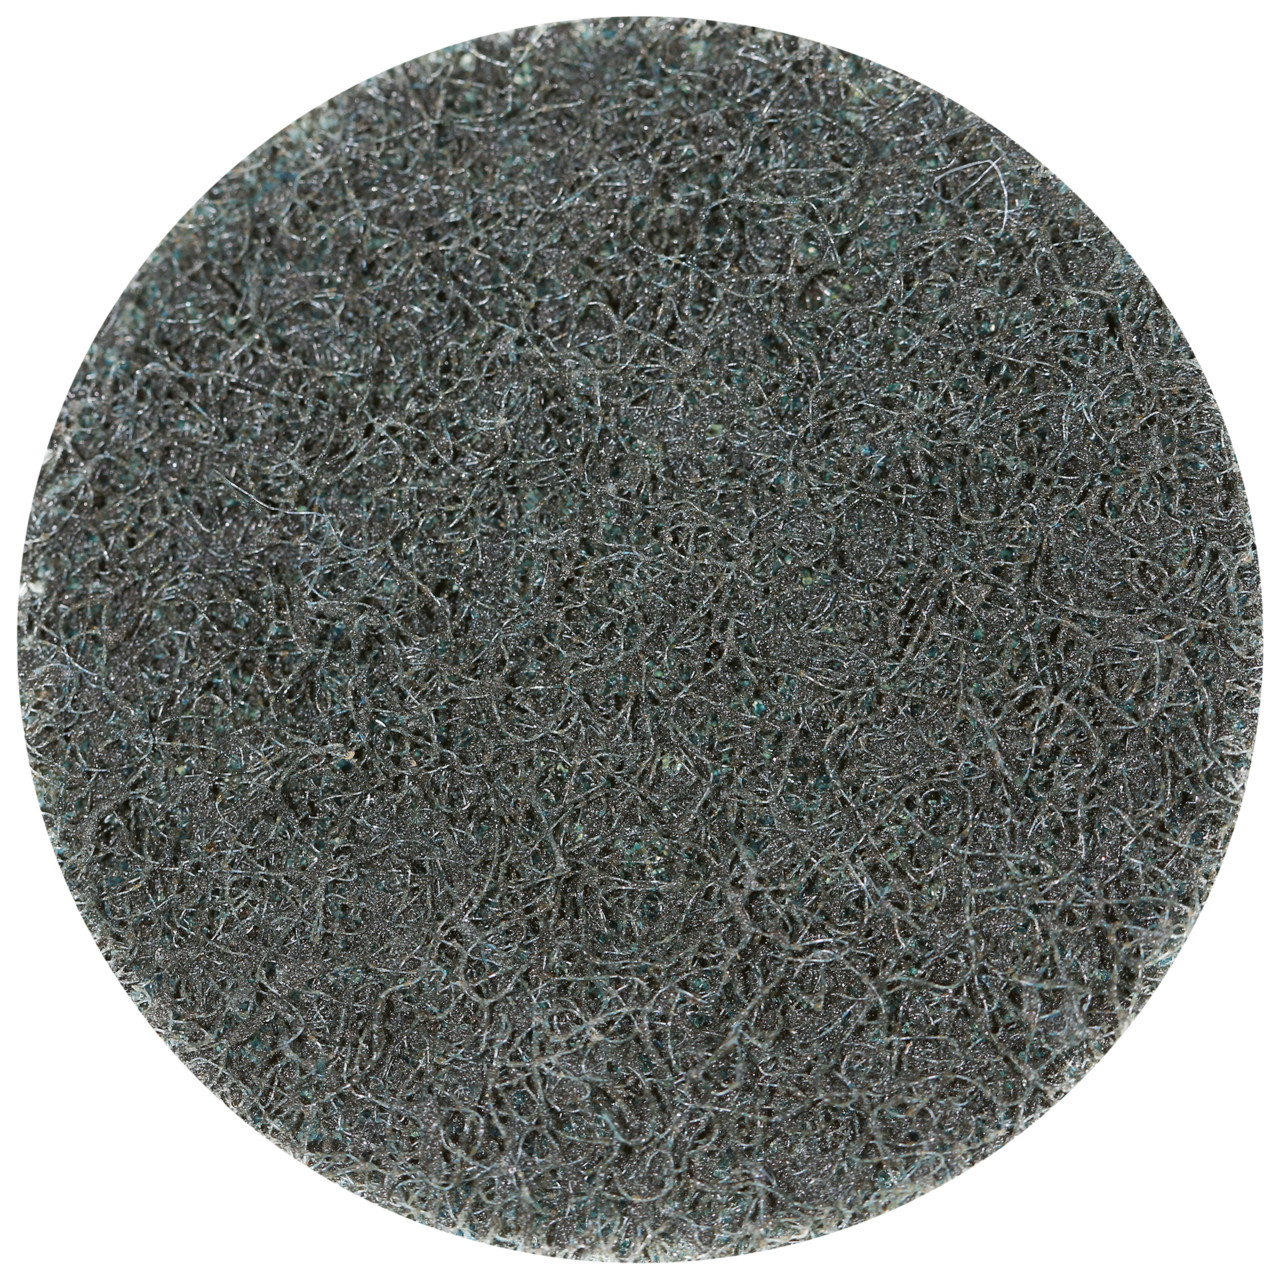 Tyrolit SCM QUICK CHANGE DISC Dimensione 50xR Per acciaio, acciaio inox, metalli non ferrosi, plastica e legno, MOLTO FINE, forma: QDISC, Art. 112550